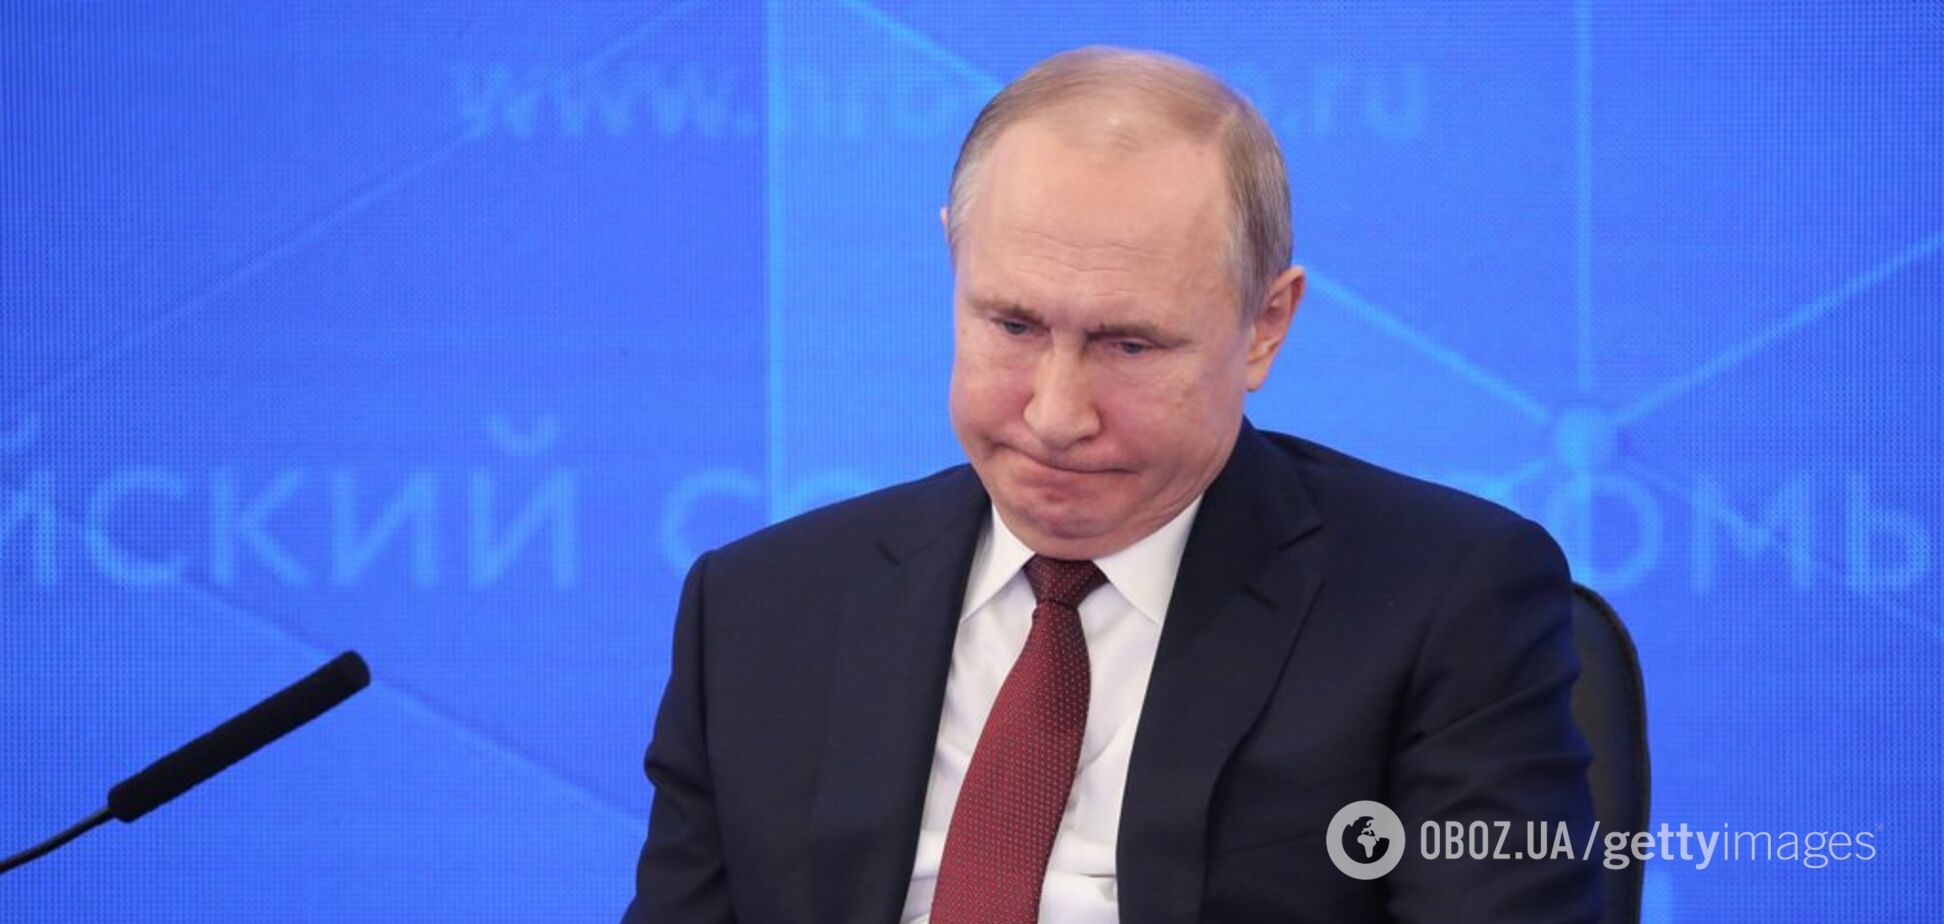   А если завтра выборы: рейтинг Путина снова рухнул